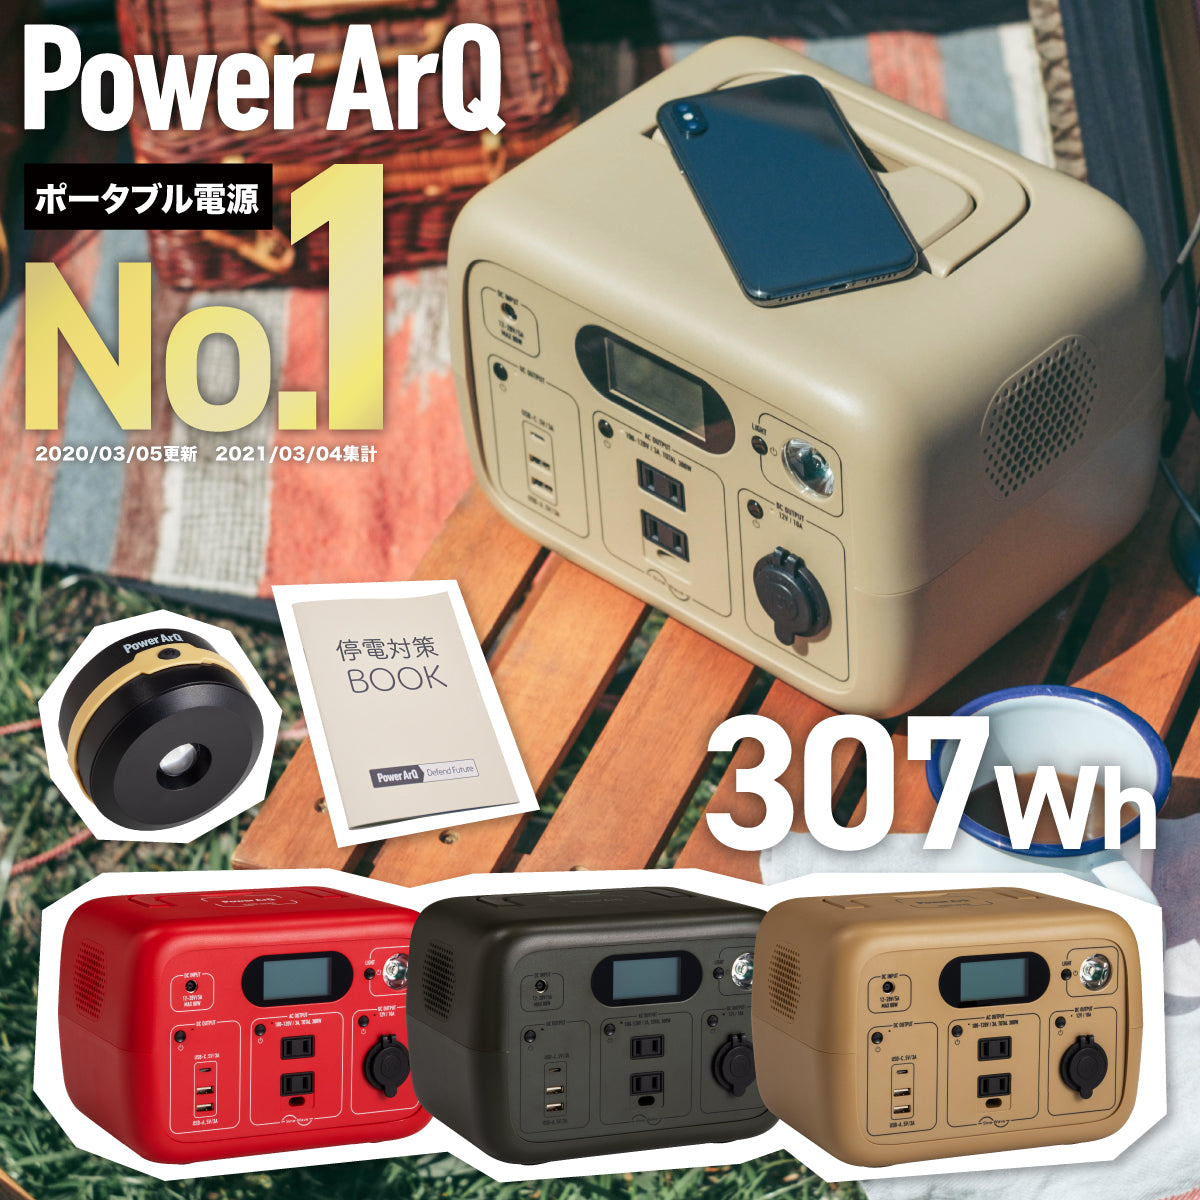 ポータブル電源 PowerArQ mini 2 300Wh Smart Tap / 冒険に、あなた ...